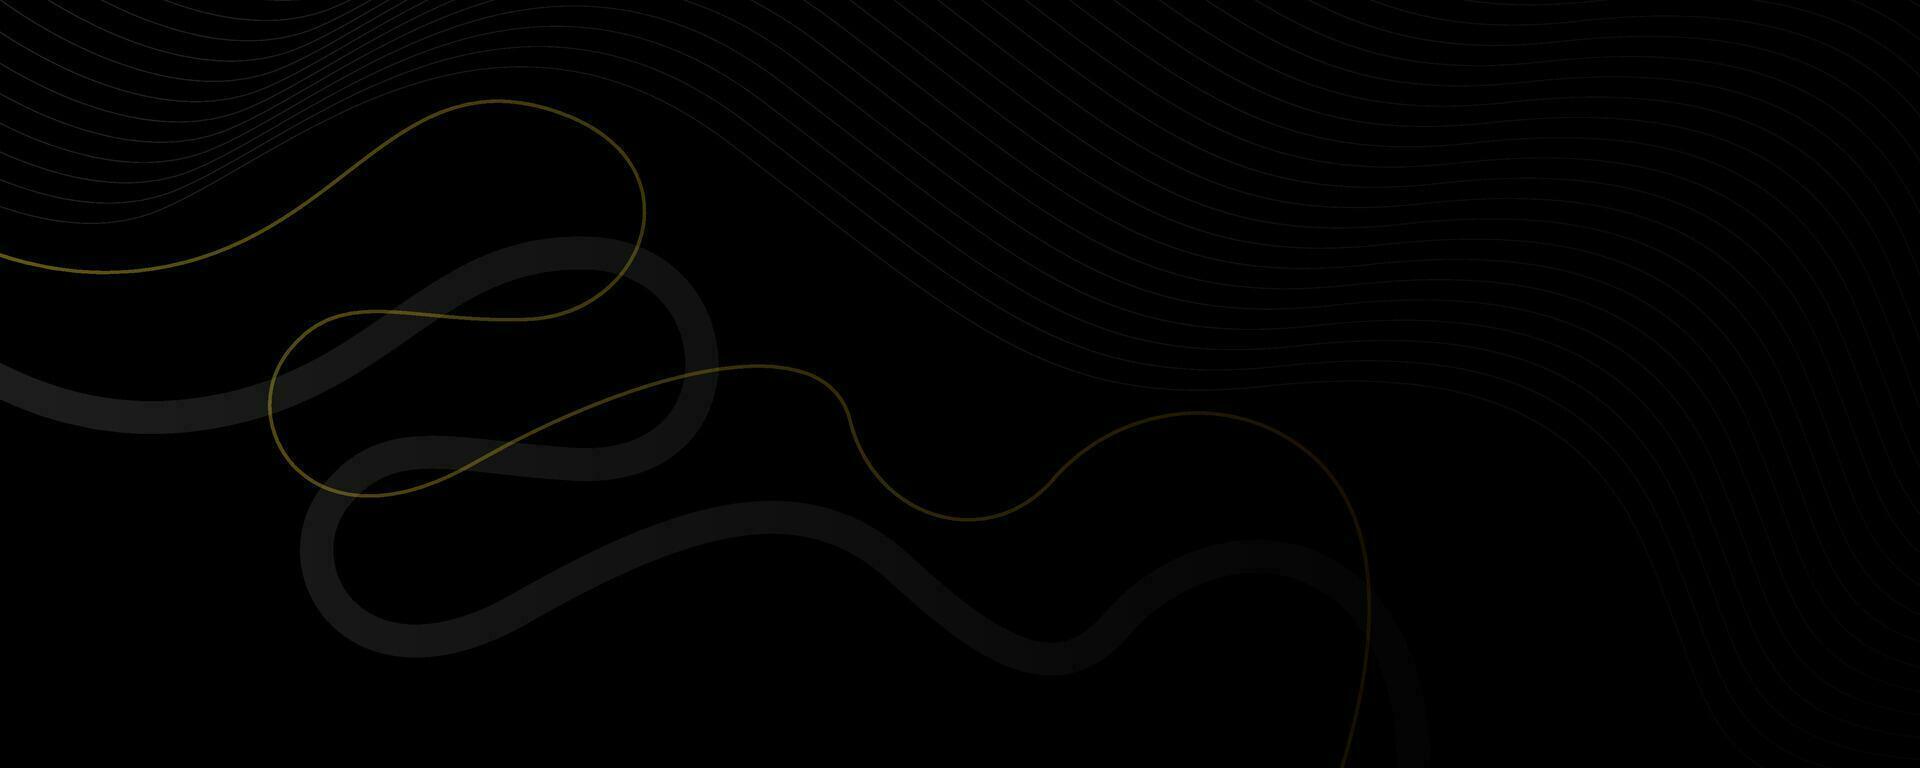 abstrakt bakgrund med vågig rader i svart och guld färger. vektor illustration